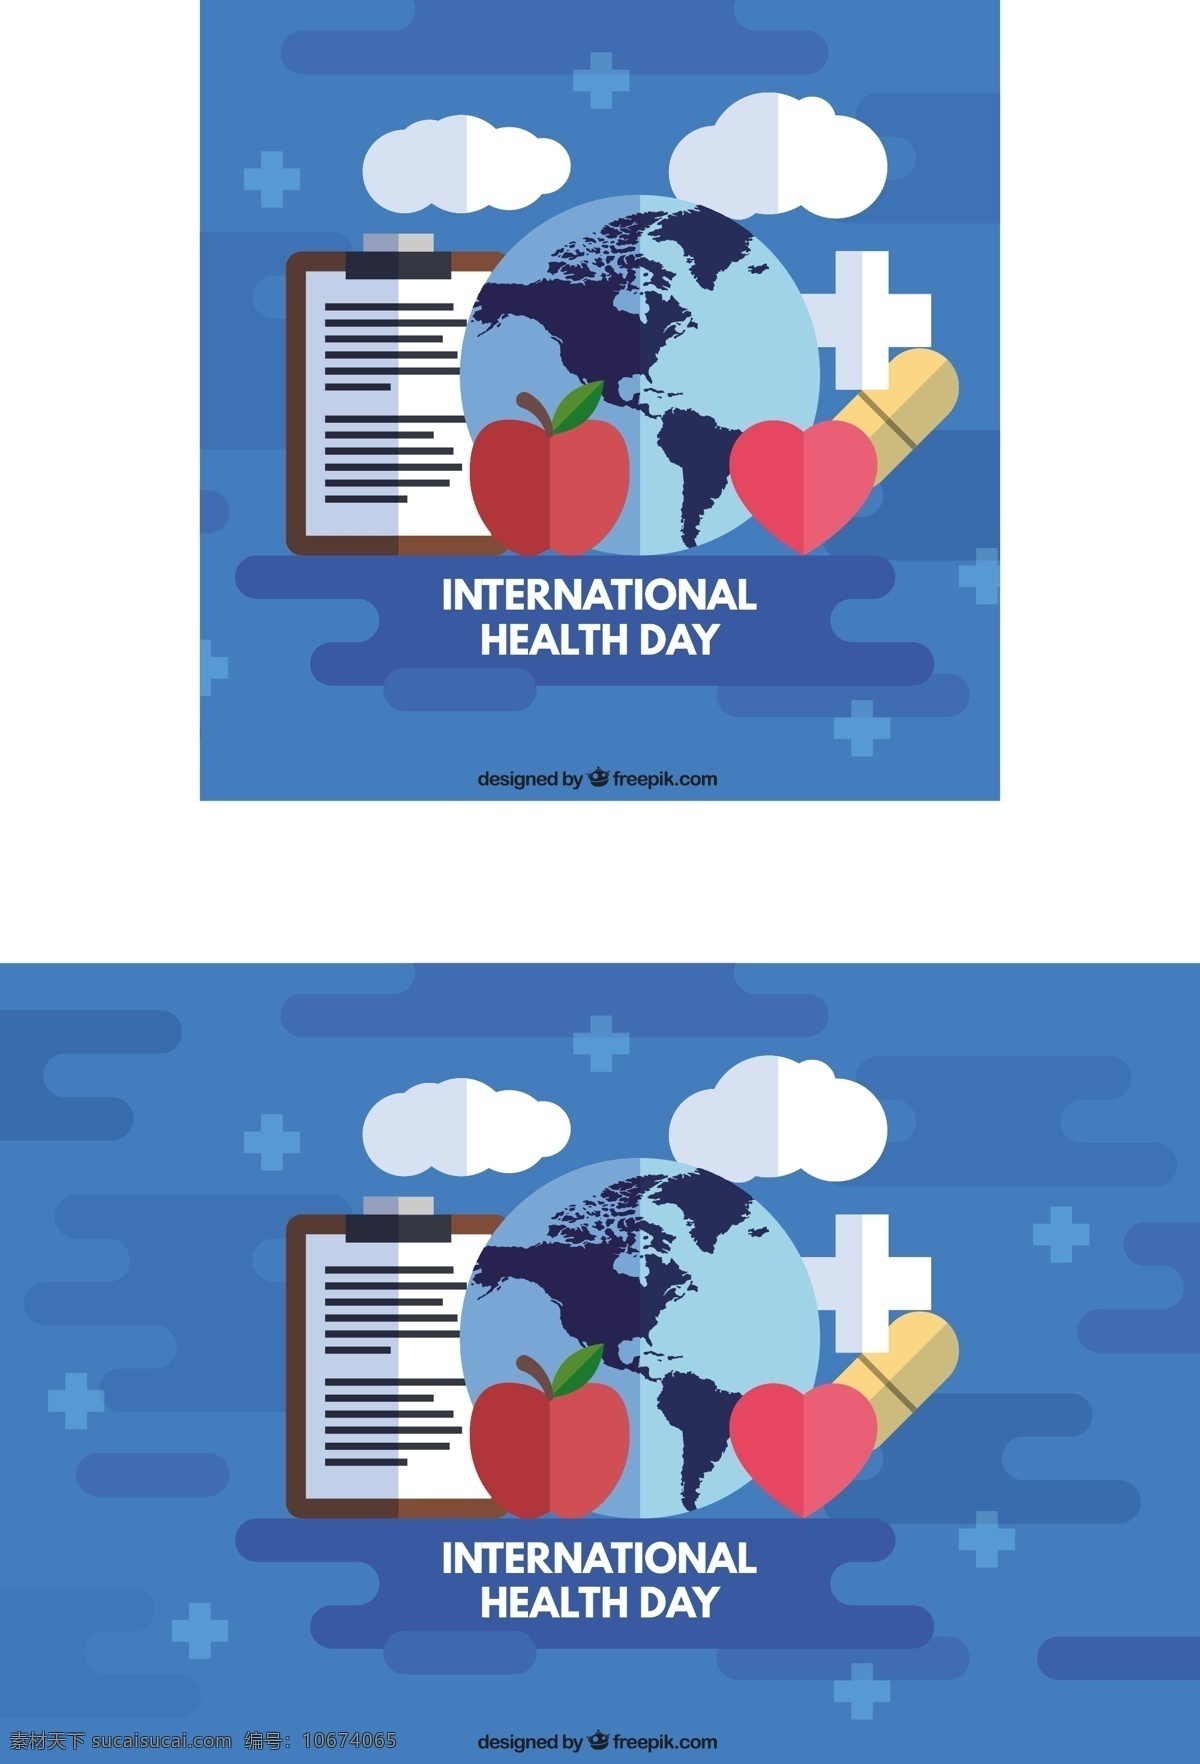 平面设计 中 医学 元素 地球 背景 世界 健康 医生 苹果 平板 医院 交叉 生活 医疗 护理 营养 生活方式 国际 蓝色